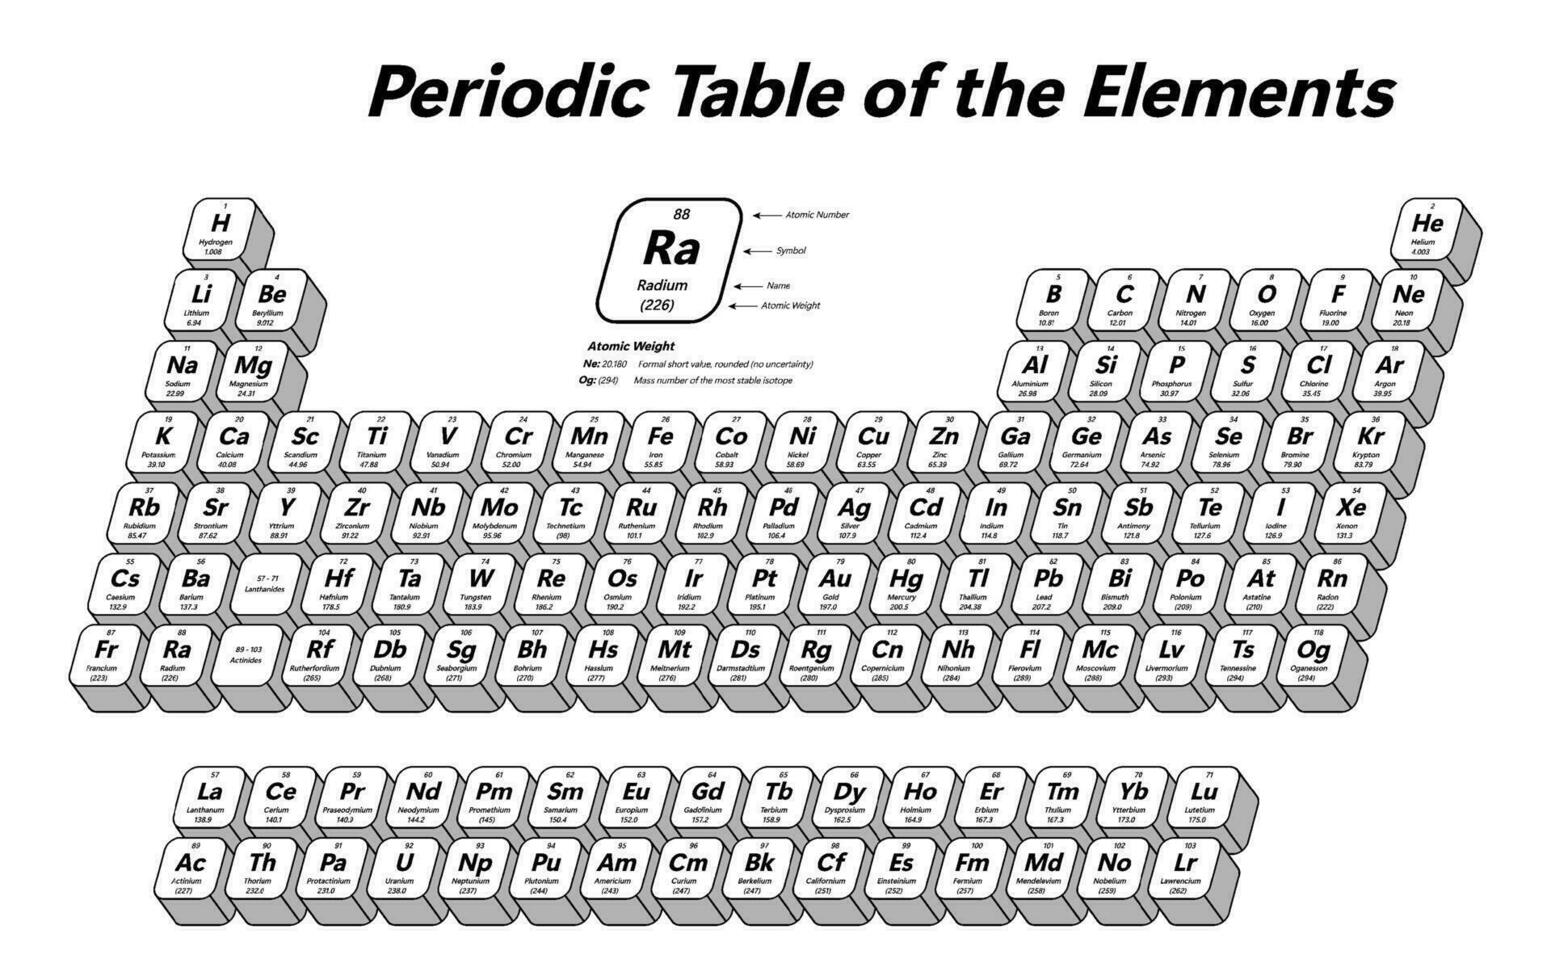 periodiek tafel van de elementen - shows atomair nummer, symbool, naam, atomair gewicht en element categorie vector